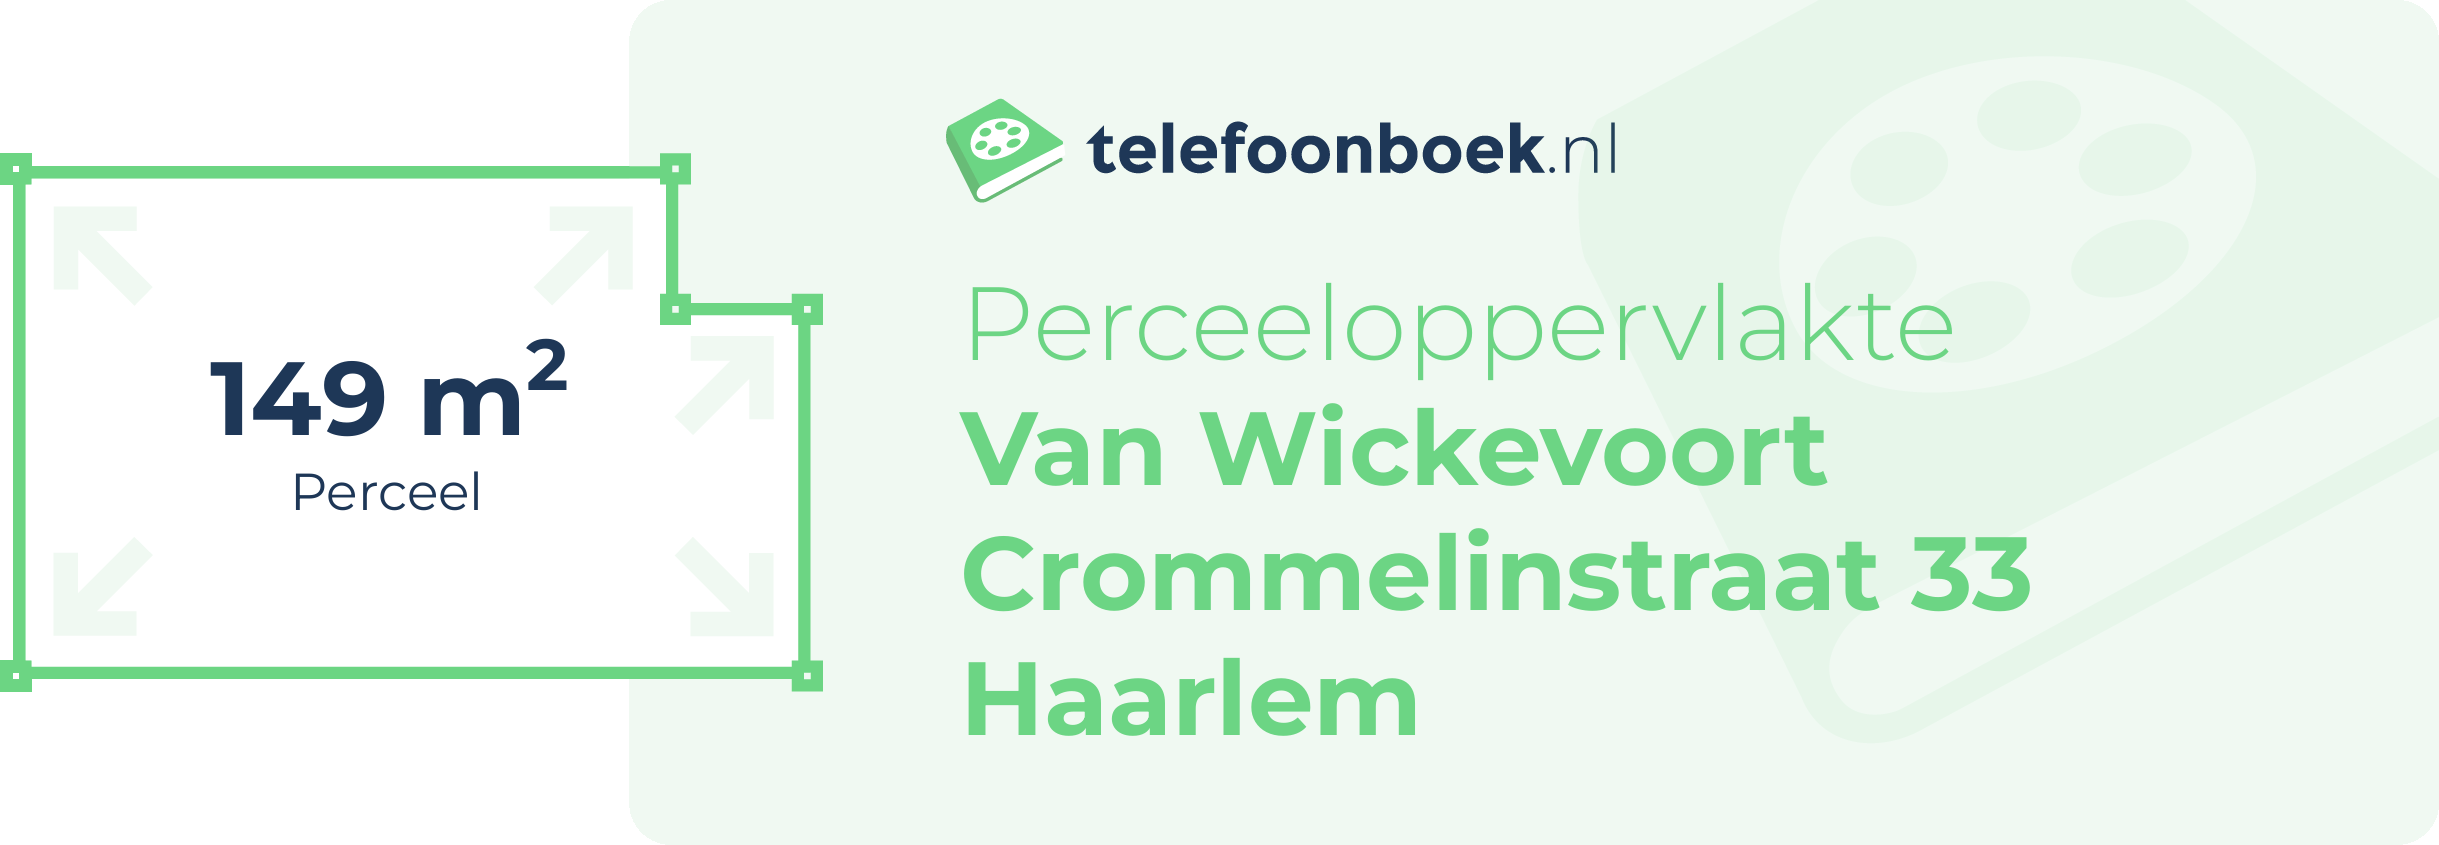 Perceeloppervlakte Van Wickevoort Crommelinstraat 33 Haarlem